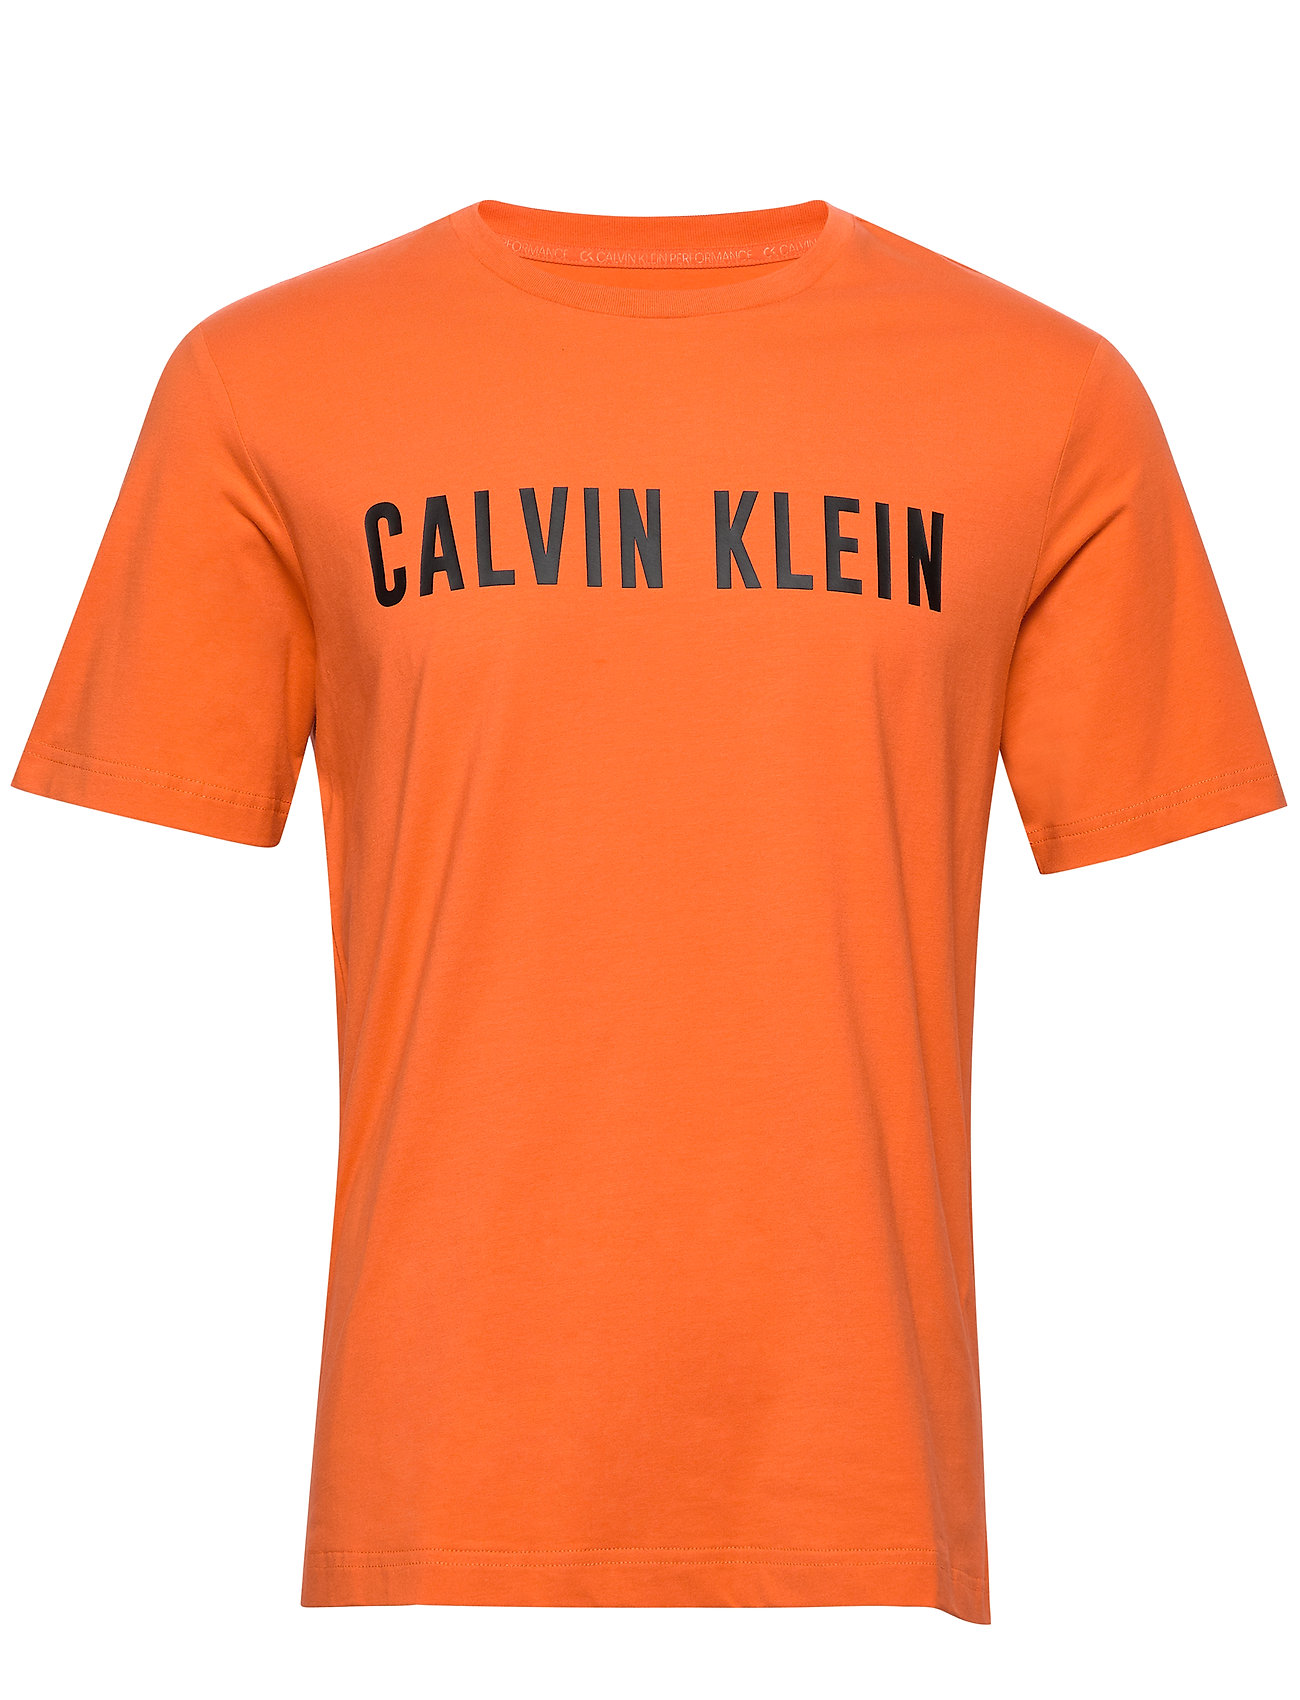 calvin klein orange shirt